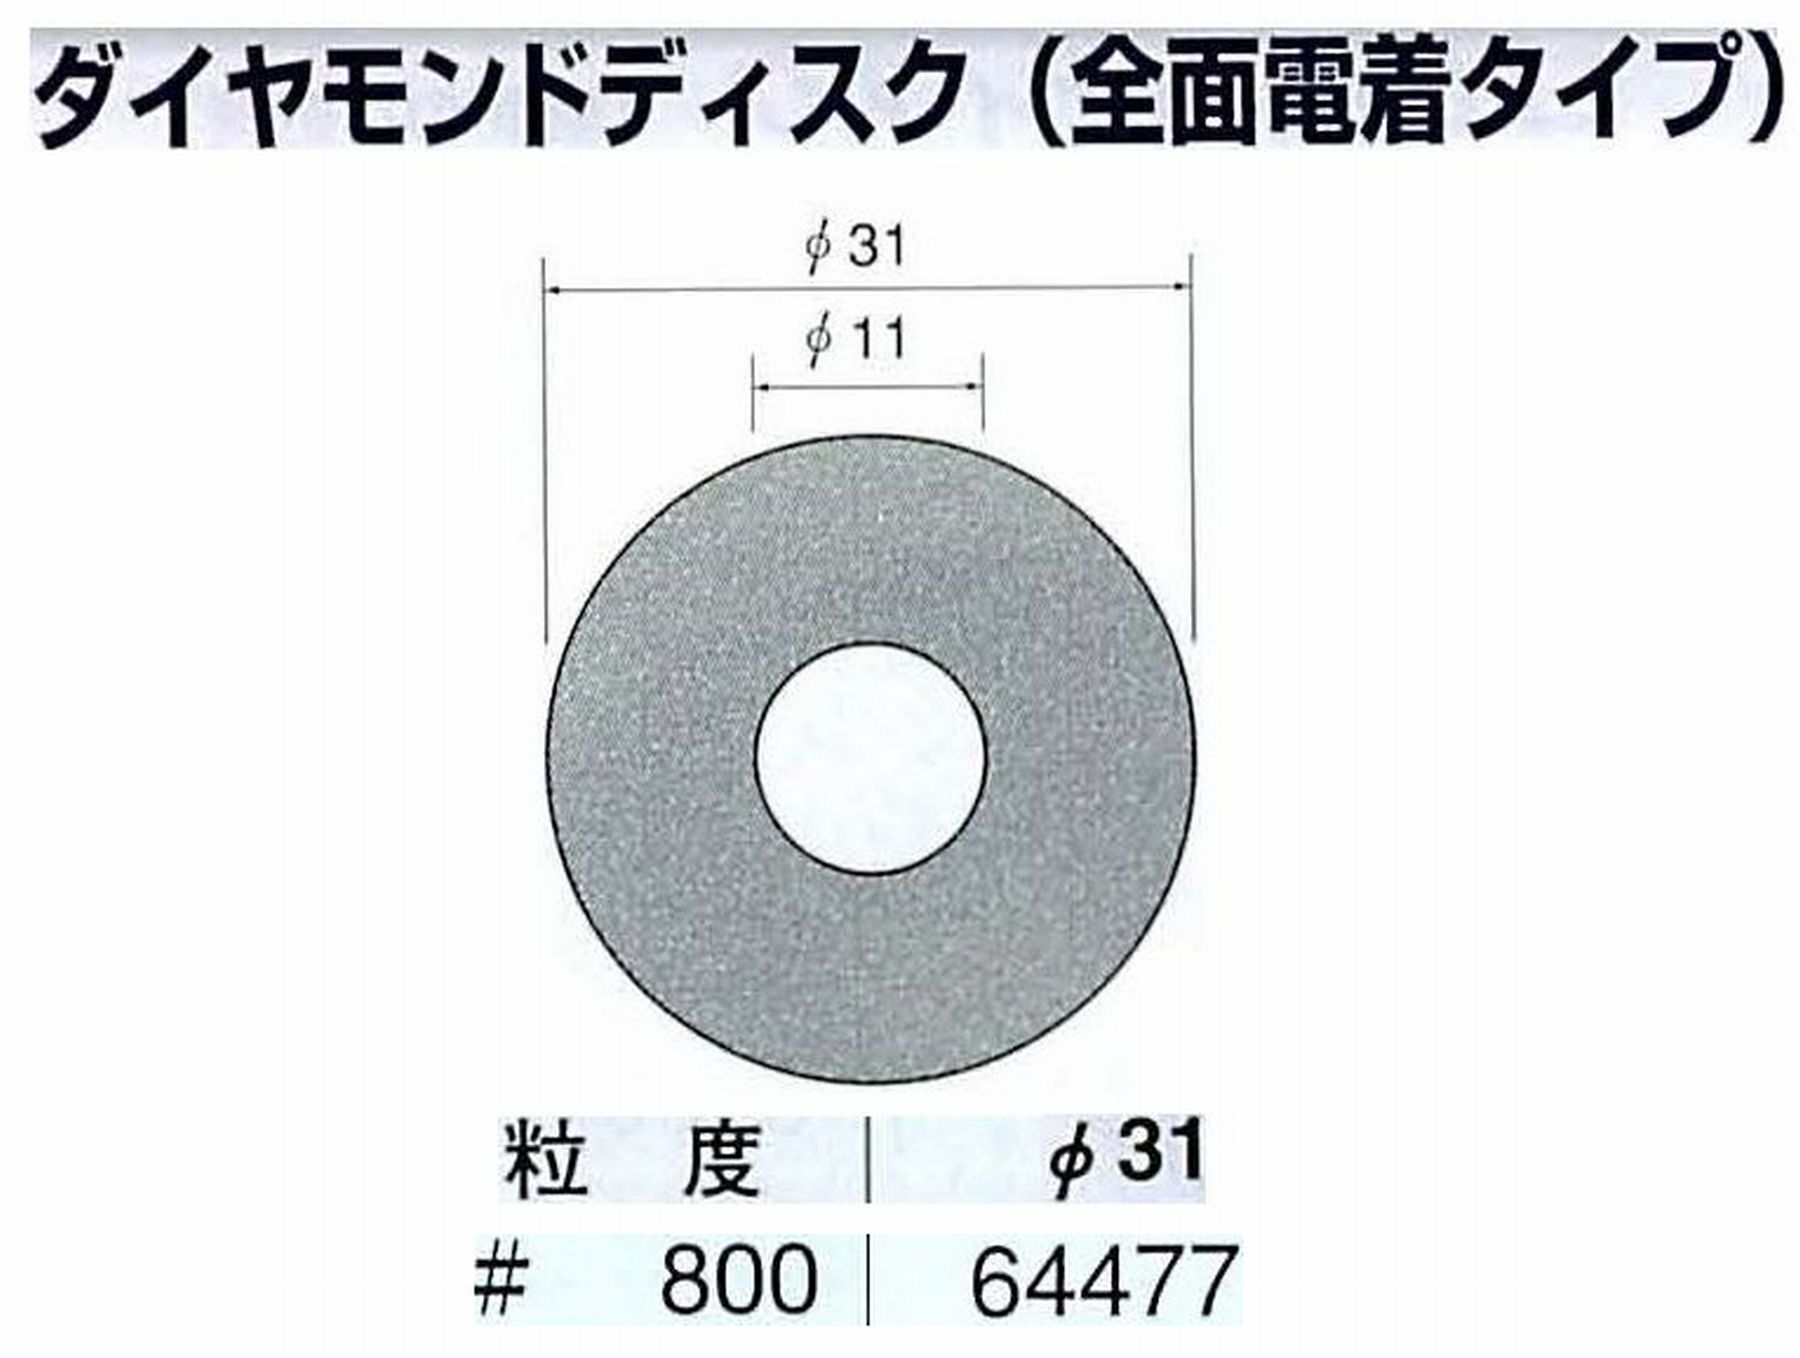 ナカニシ/NAKANISHI アングルグラインダ(電動・エアー) アングルアタッチメント専用工具 ダイヤモンドディスク(全面電着タイプ) 64477